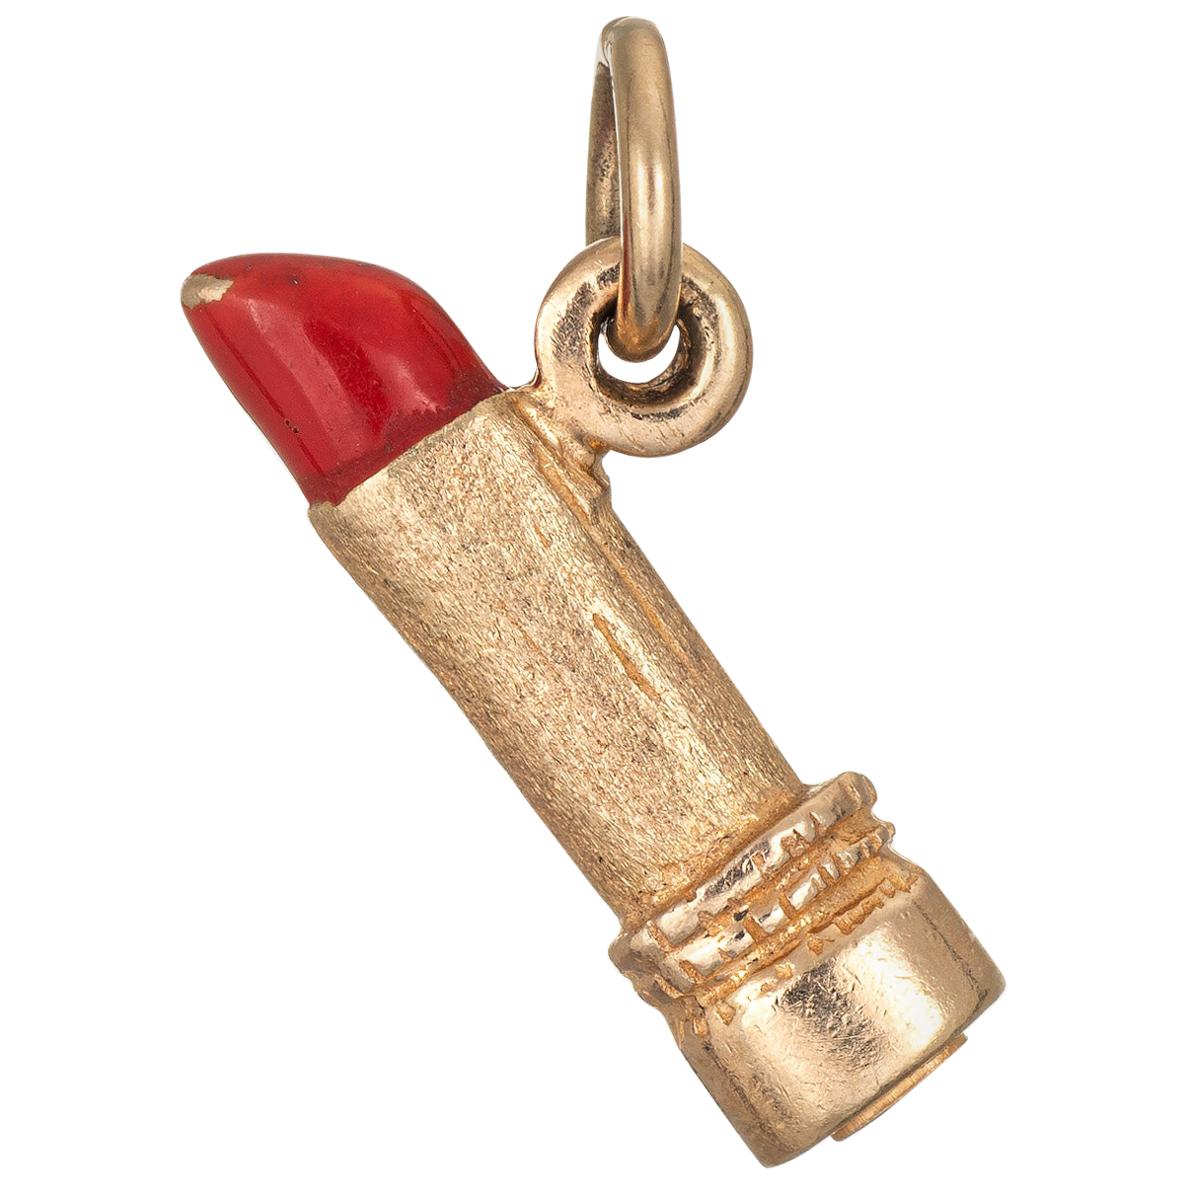 Red Lipstick Charm 14 Karat Yellow Gold Lippy Estate Pendant Make Up Jewelry